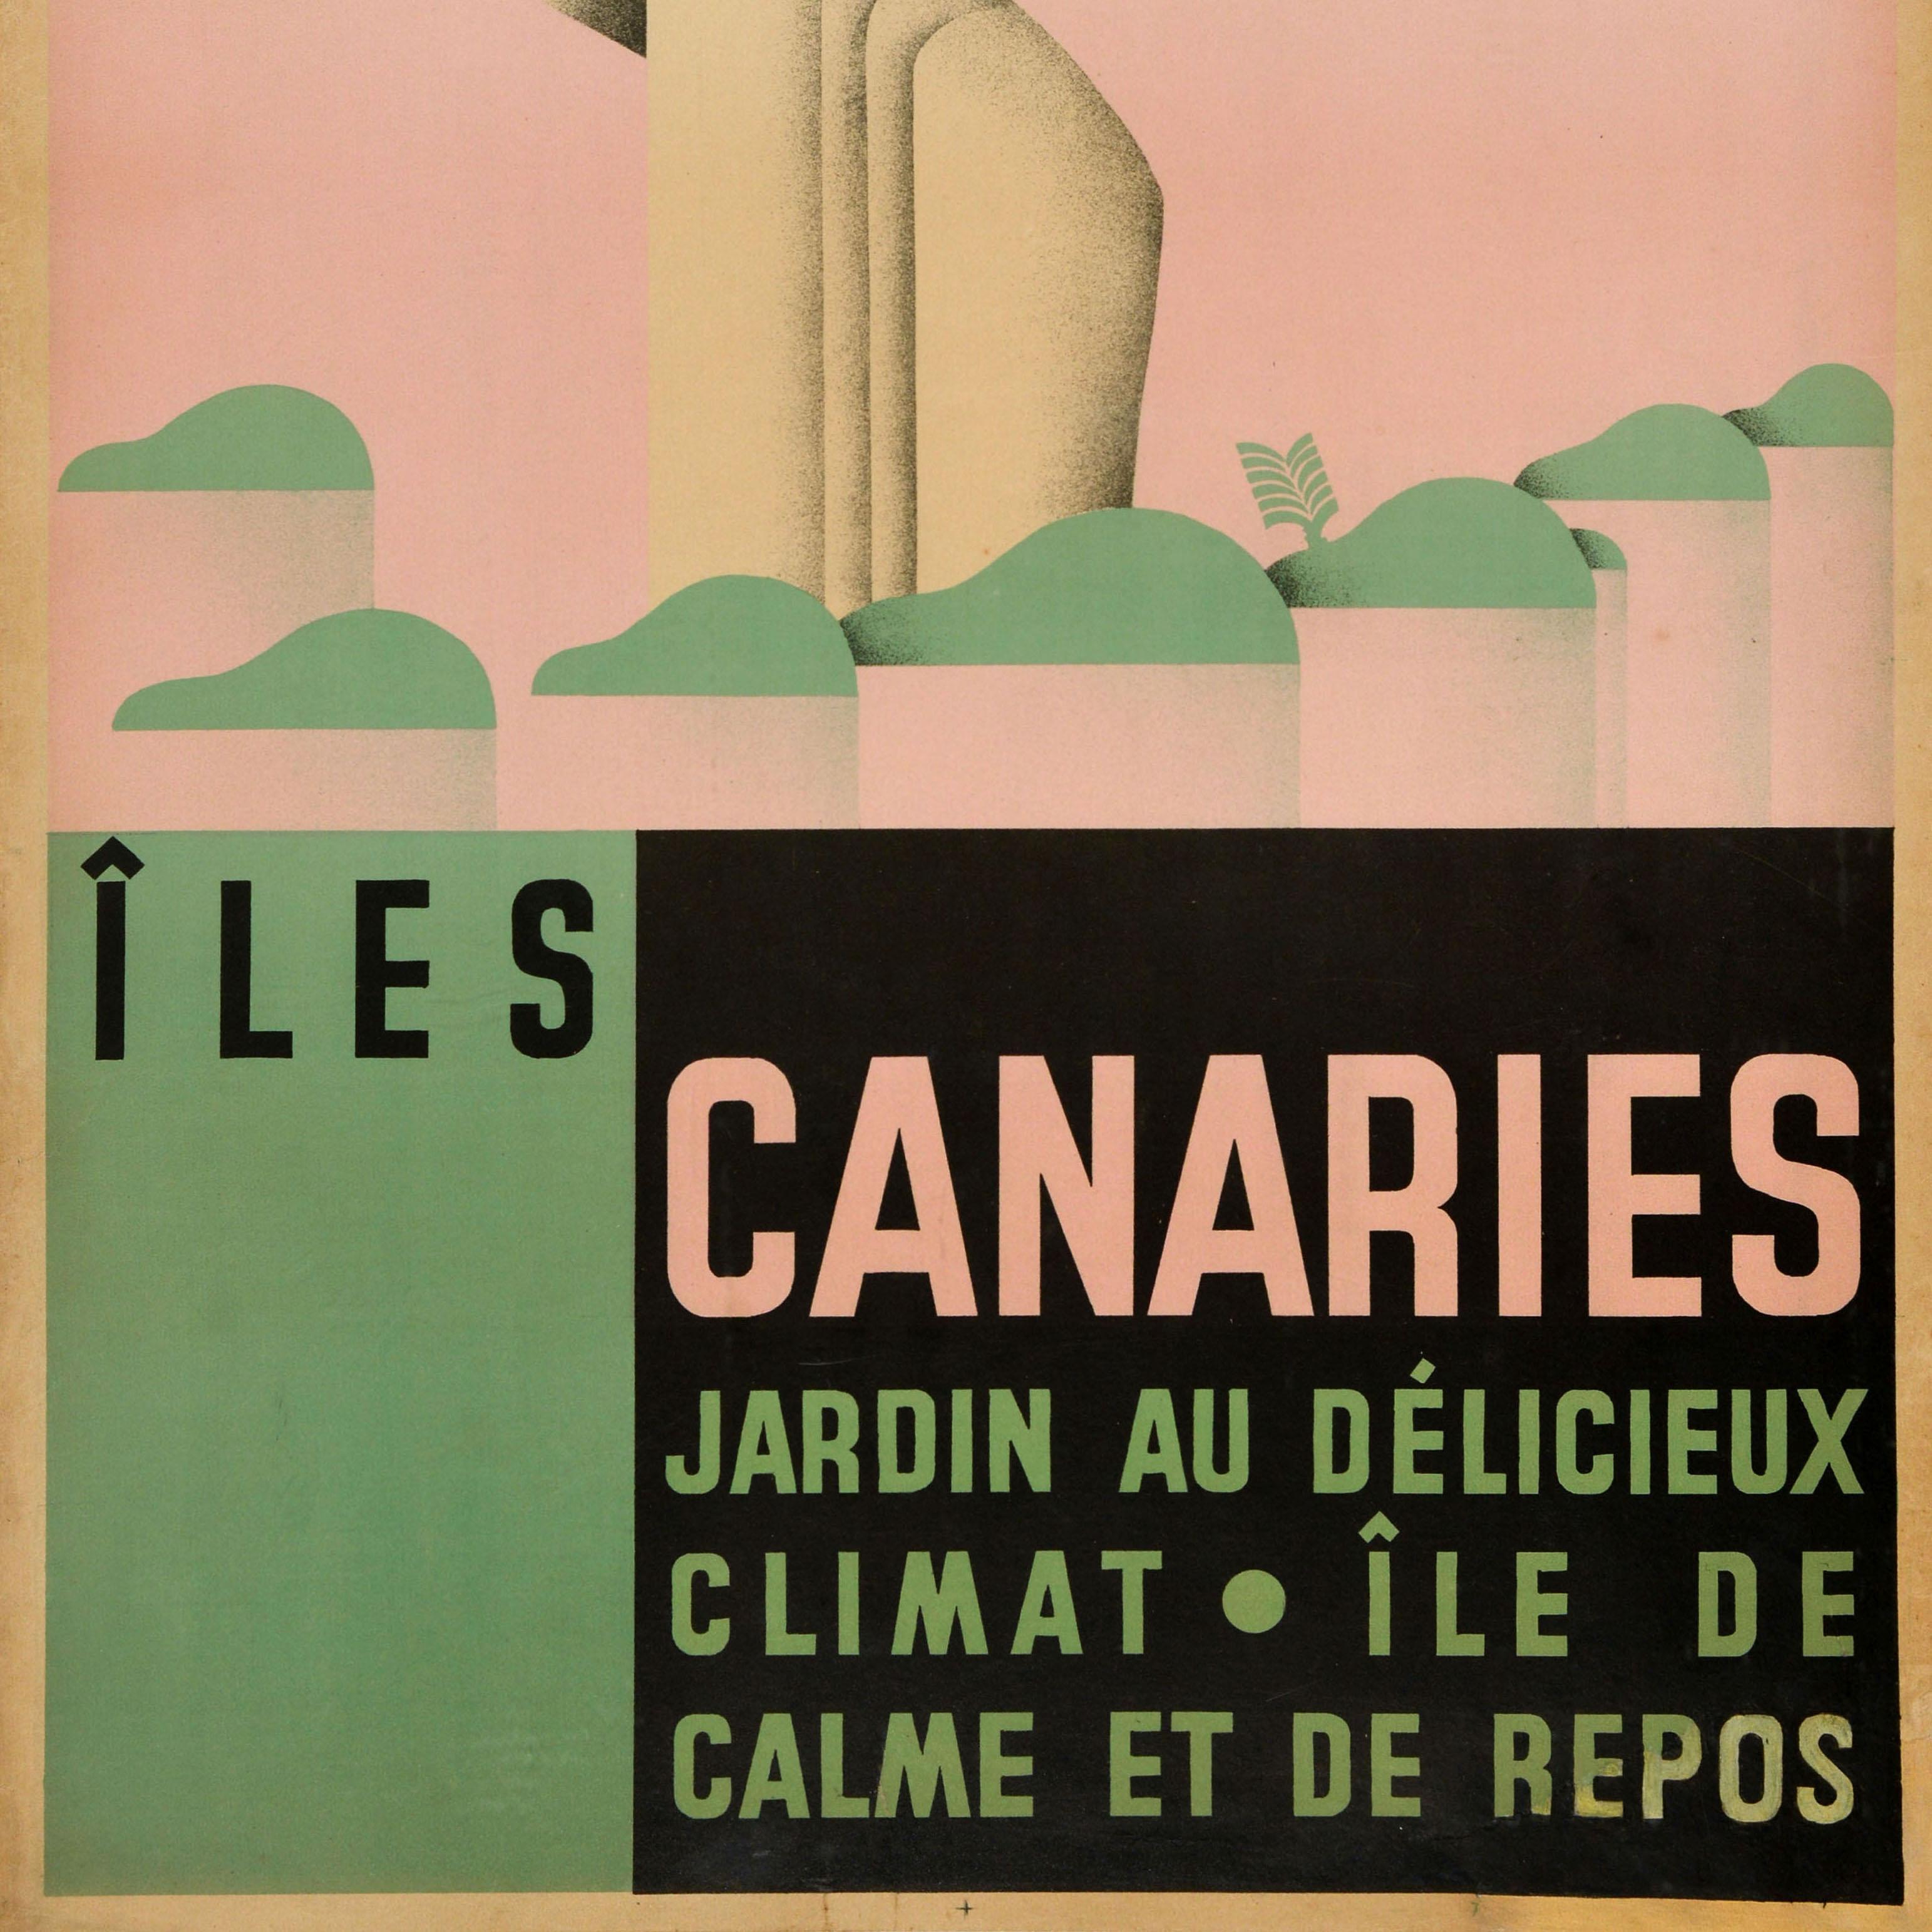 Original Vintage-Reiseplakat für die Kanarischen Inseln / Iles Canaries mit einem großartigen Design von Antonio Ares Moline (1907-1937), das eine Dame mit Inseln zu ihren Füßen vor einem rosafarbenen Hintergrund zeigt. Die Bildunterschrift lautet -